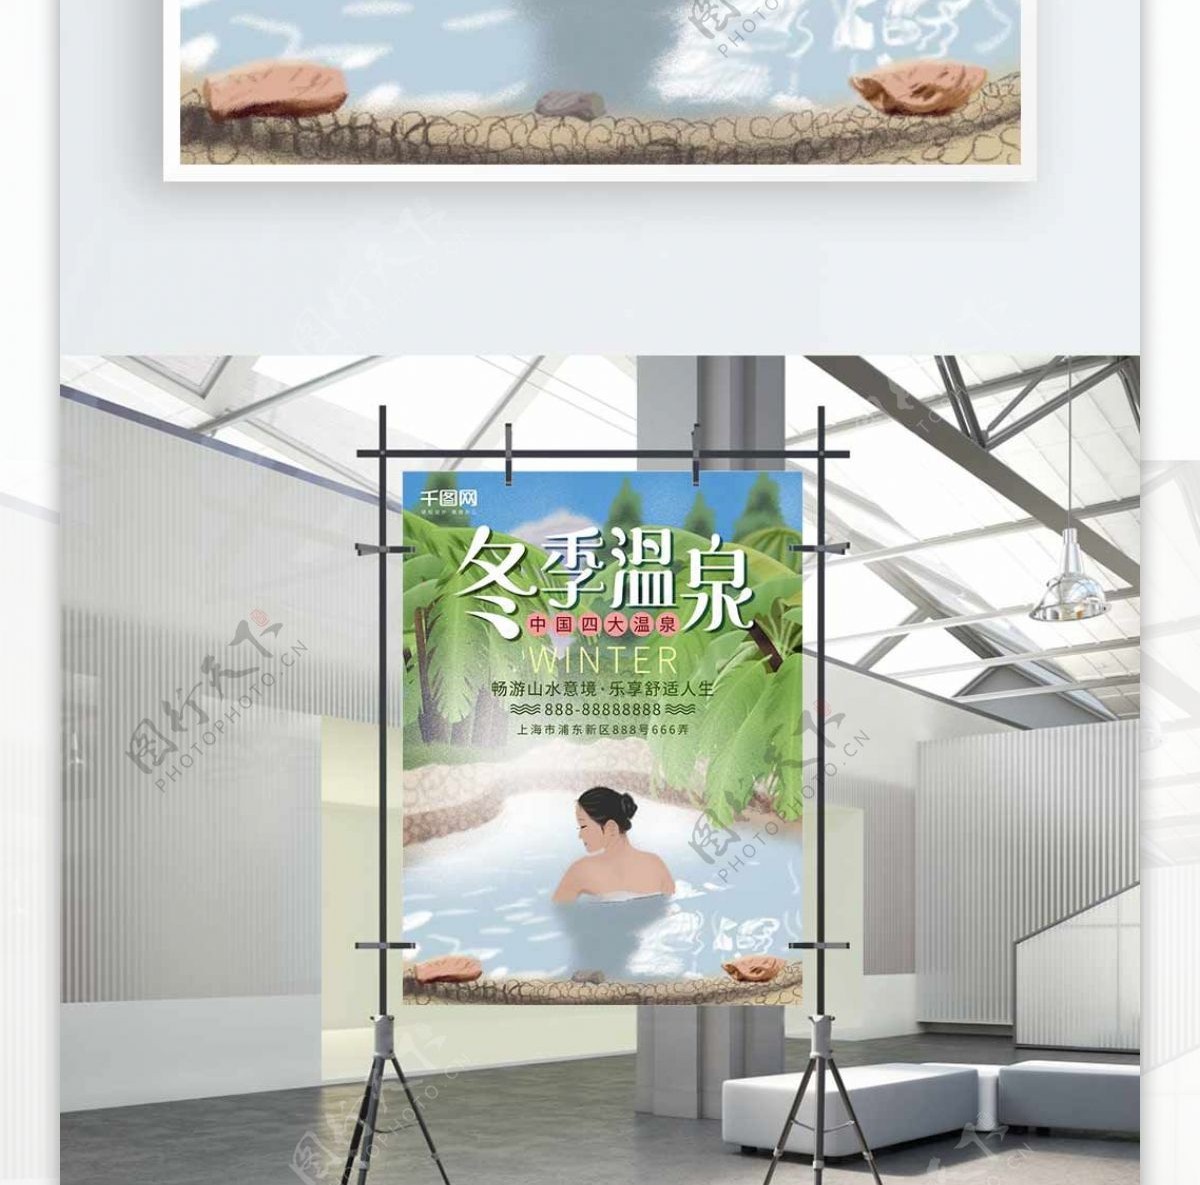 唯美简约清新冬季冬日温泉促销旅游旅行海报